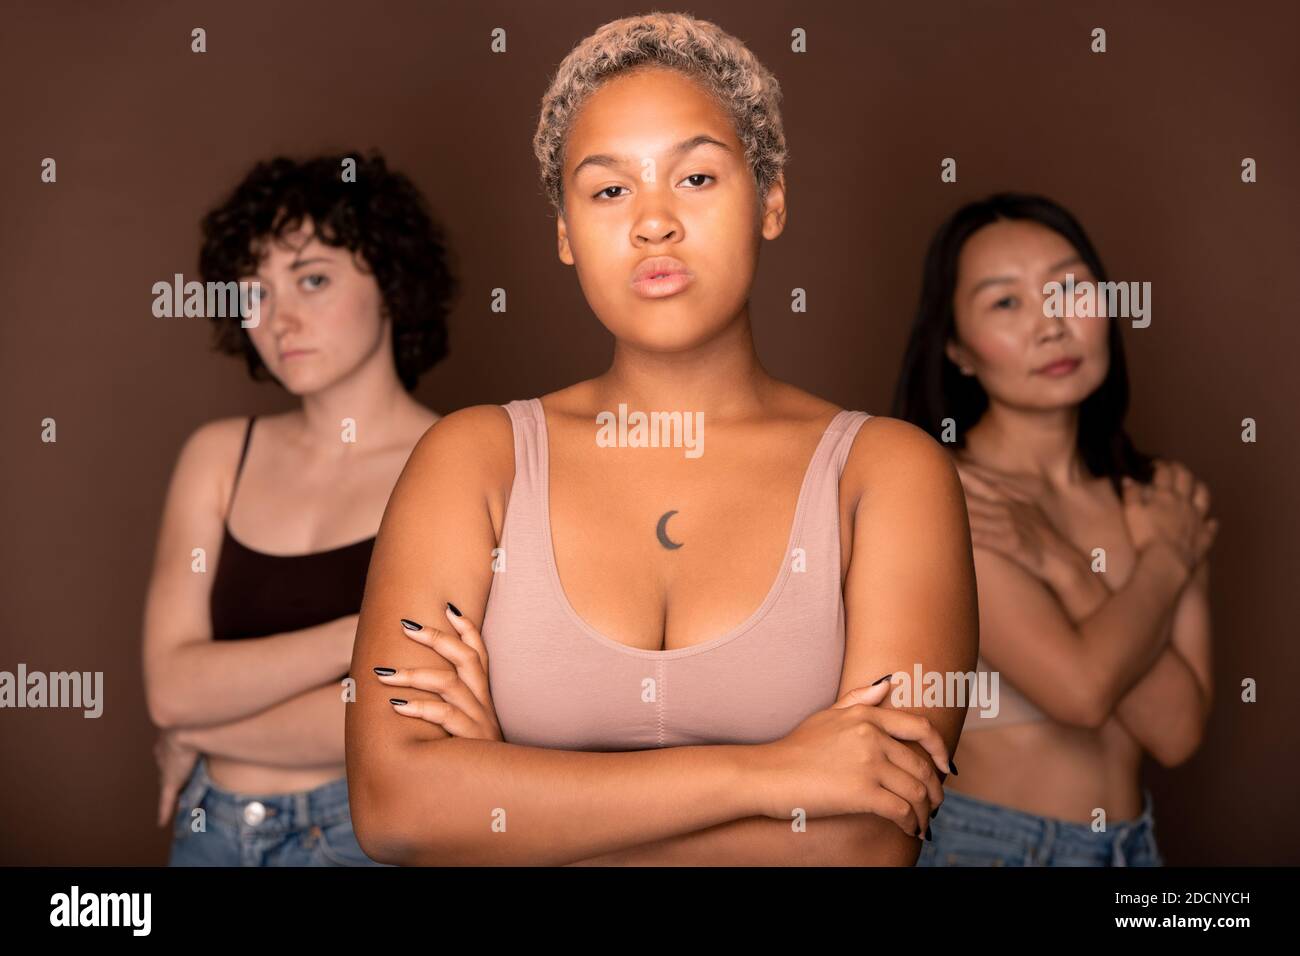 Junge seriöse blonde Mixed-Race-Frau vor zwei stehen Andere Frauen Stockfoto